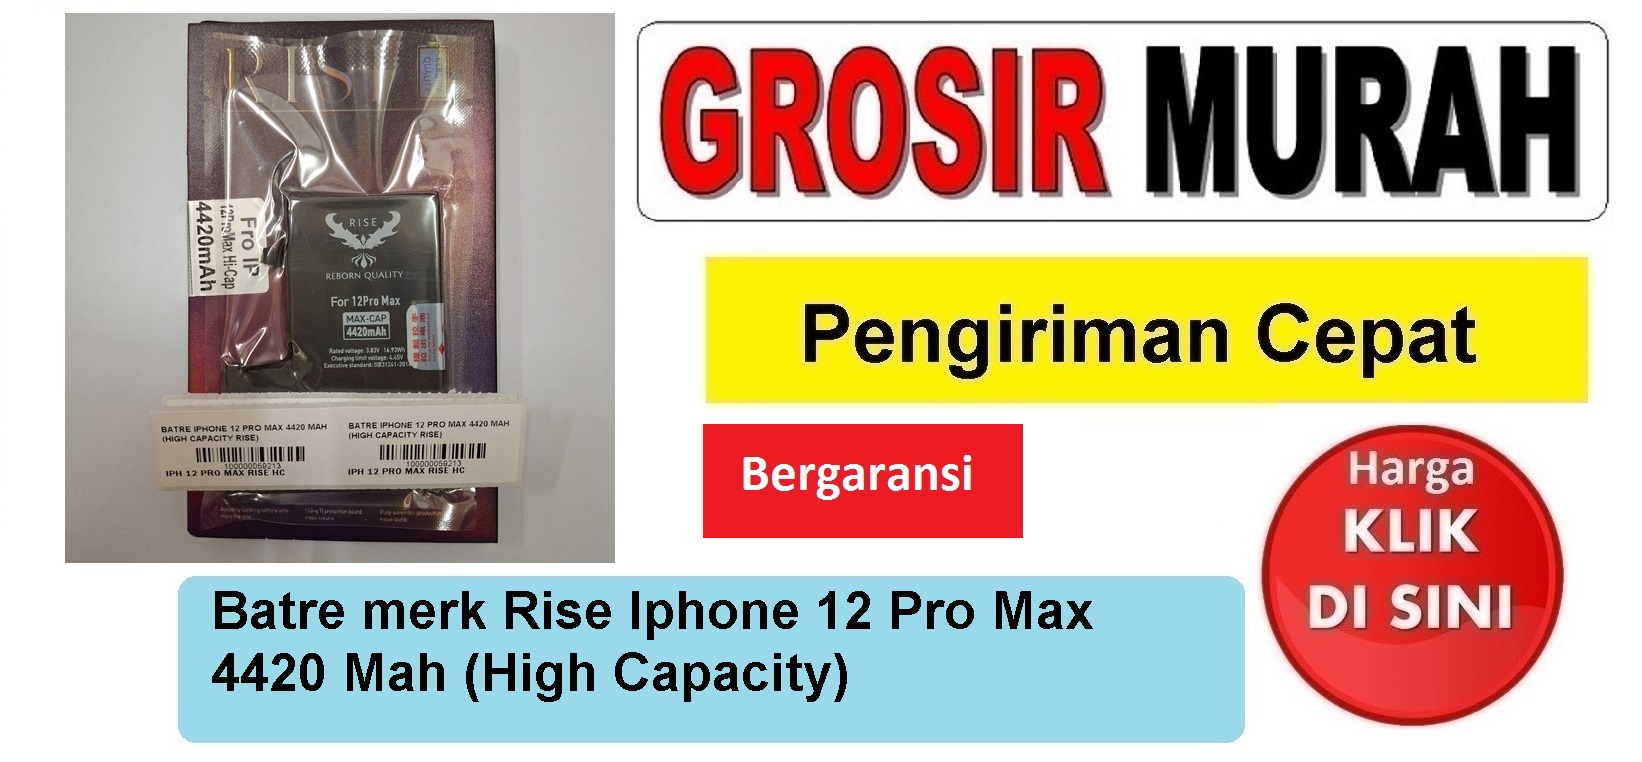 Batre merk Rise Iphone 12 Pro Max 4420 Mah (High Capacity) Baterai Battery Bergaransi Batere